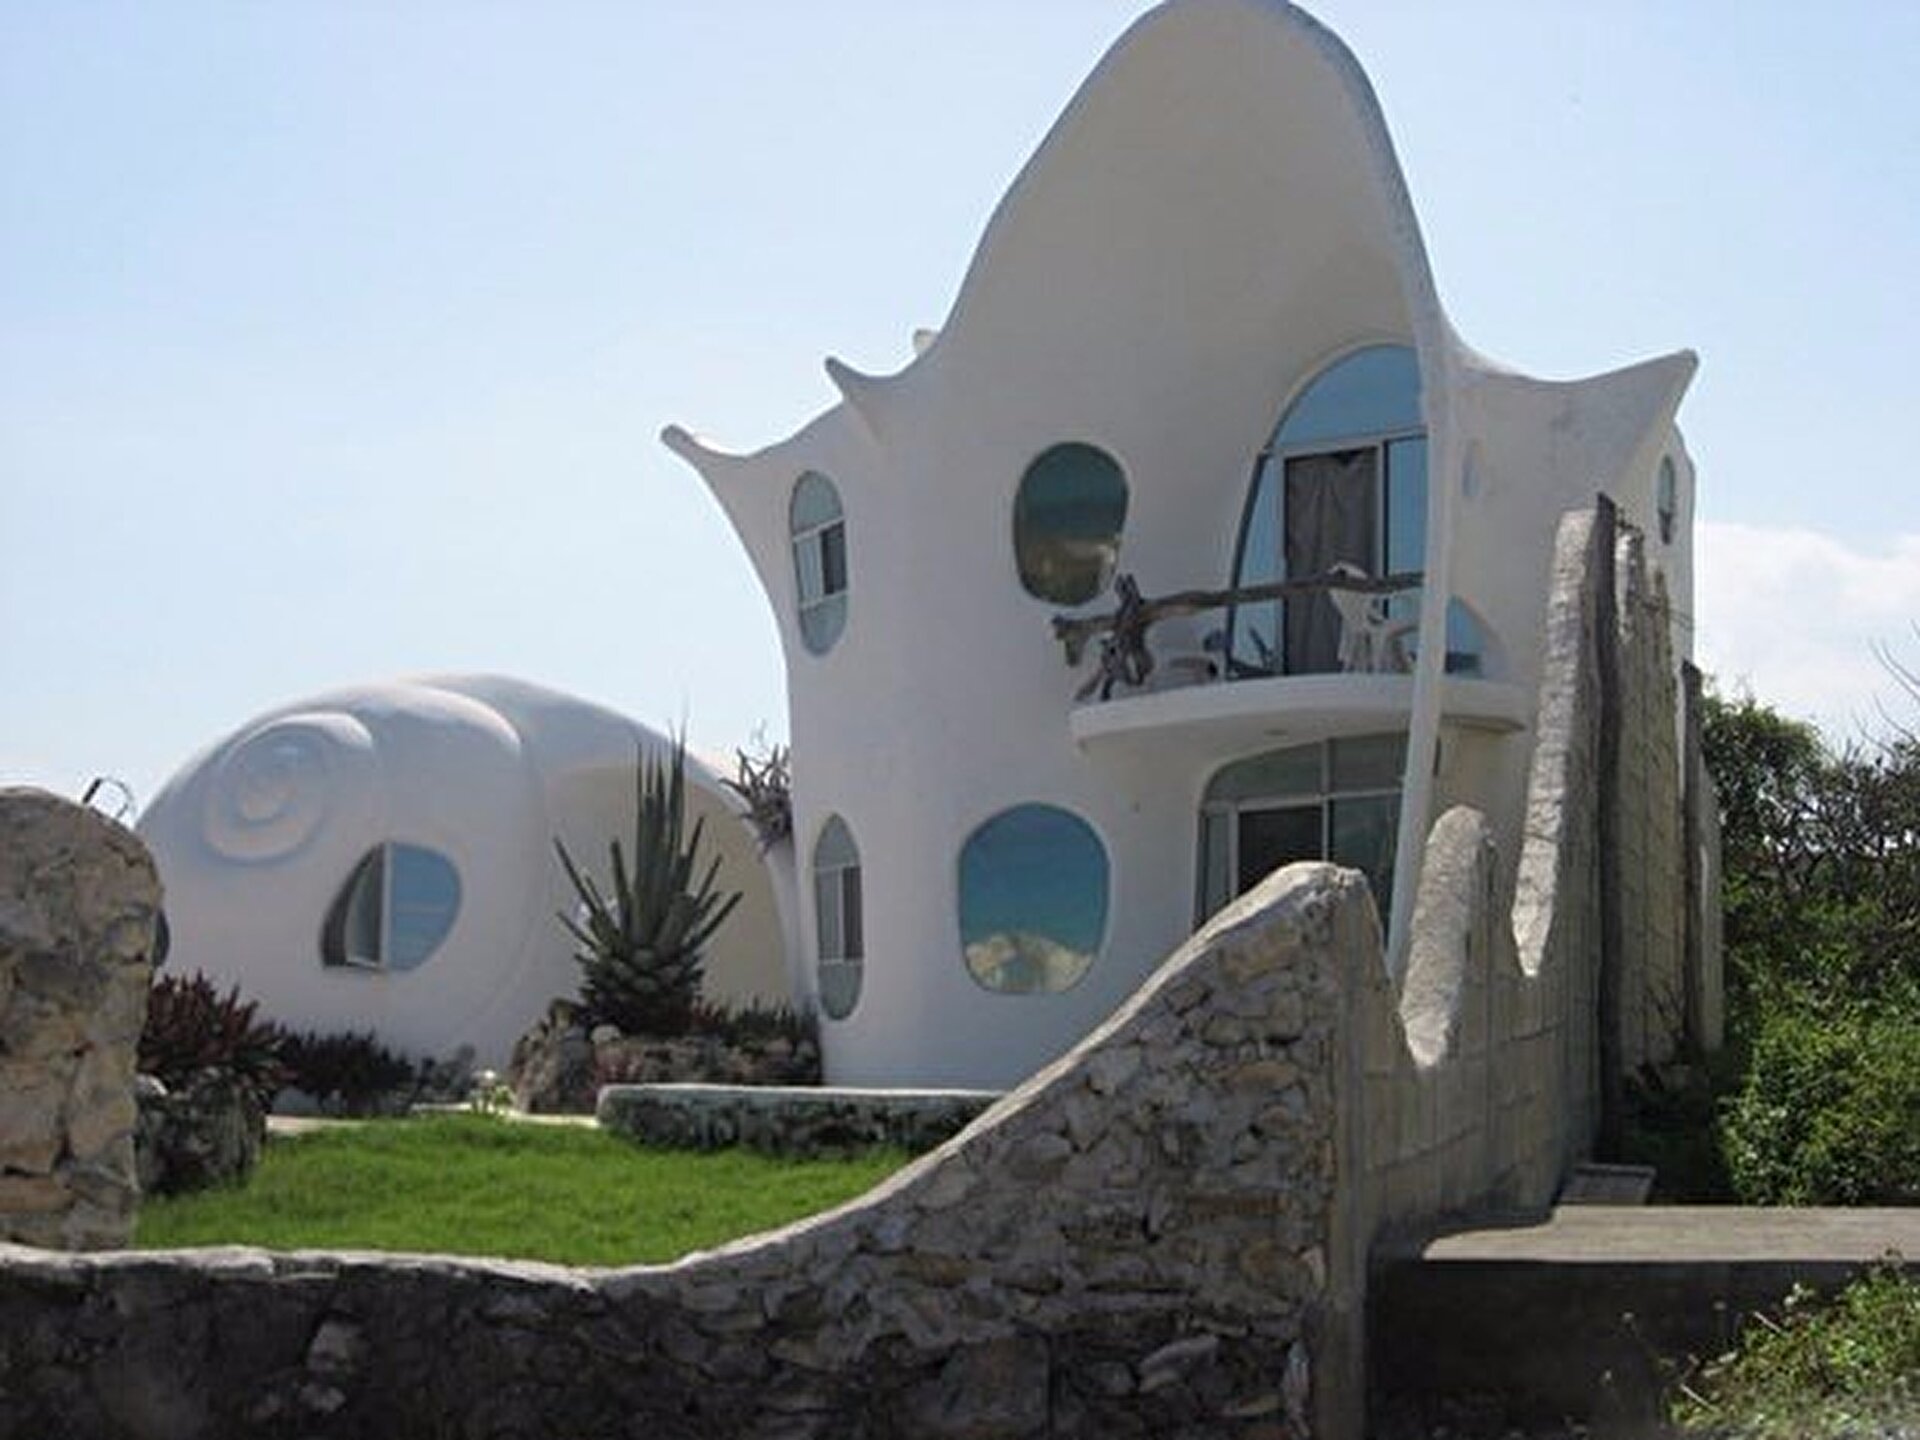 Conch Shell House (Исла-Мухерес, Мексика)